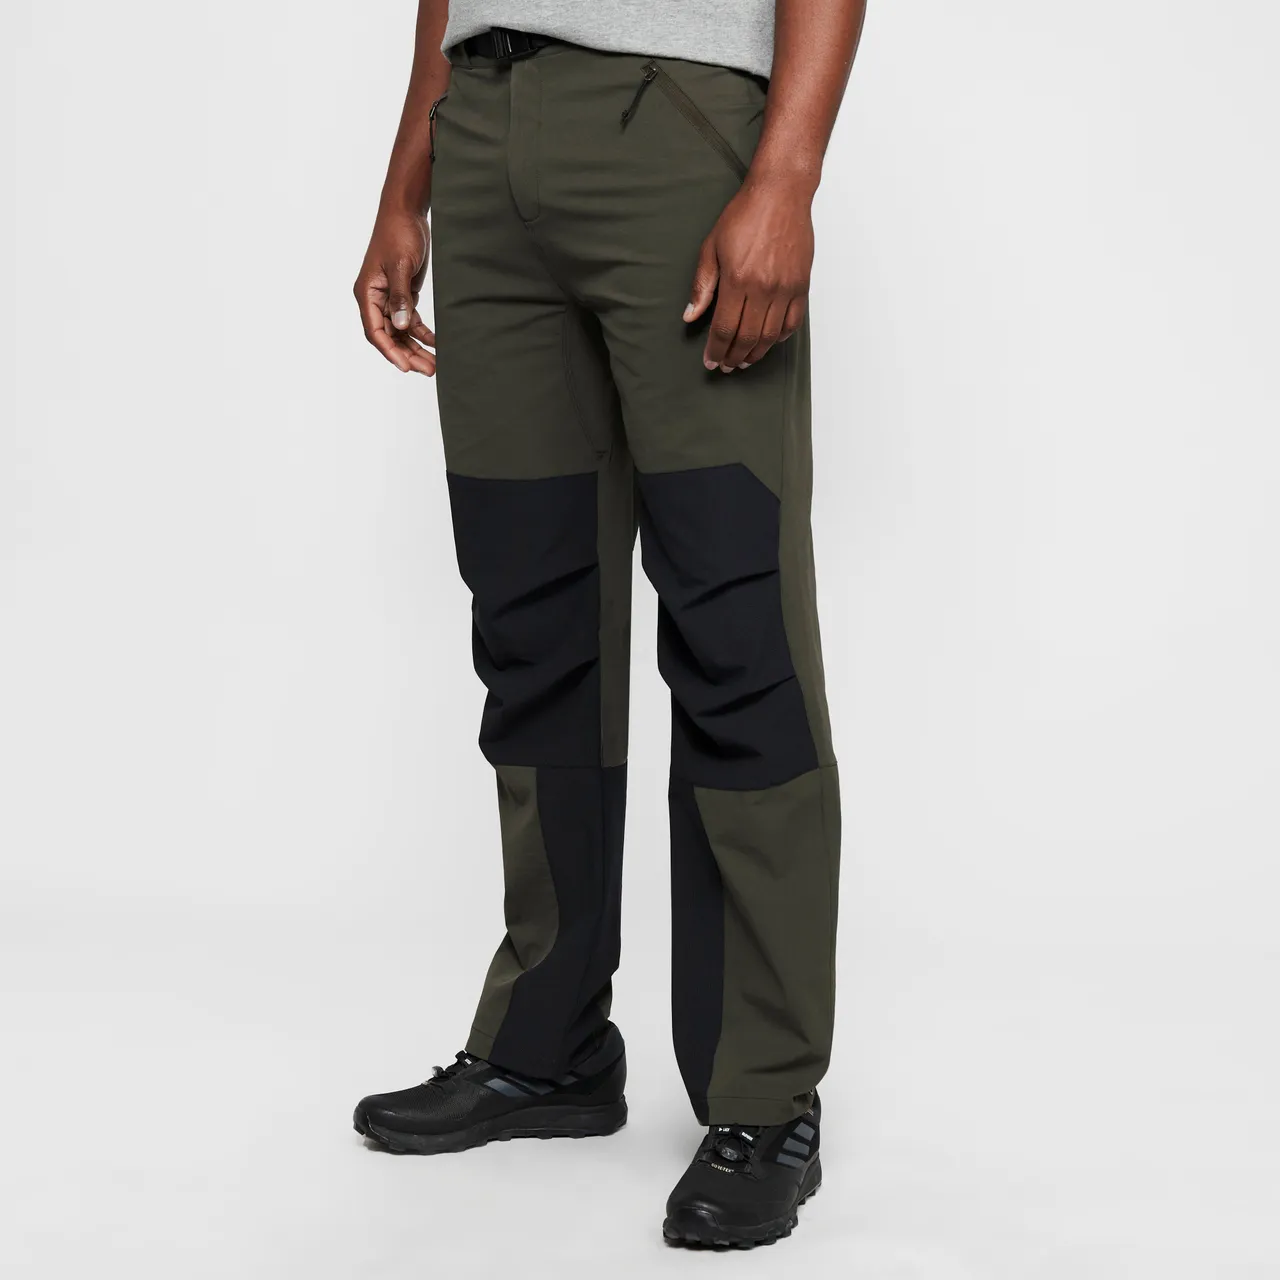 Men's Strata Softshell Trousers (Regular Length), Khaki